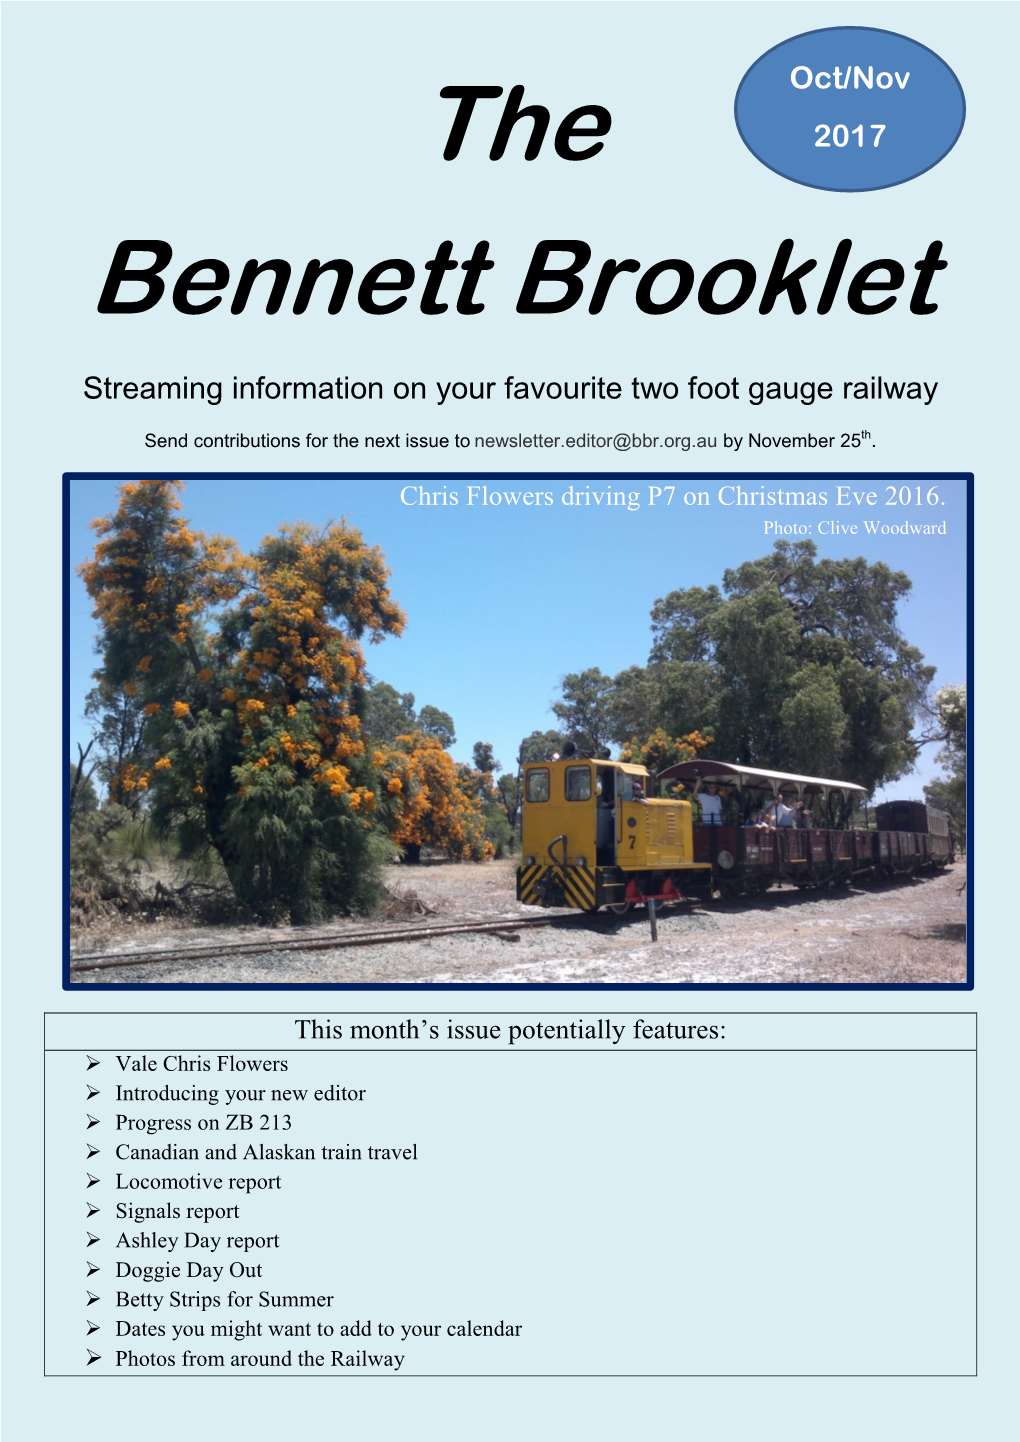 The Bennett Brooklet